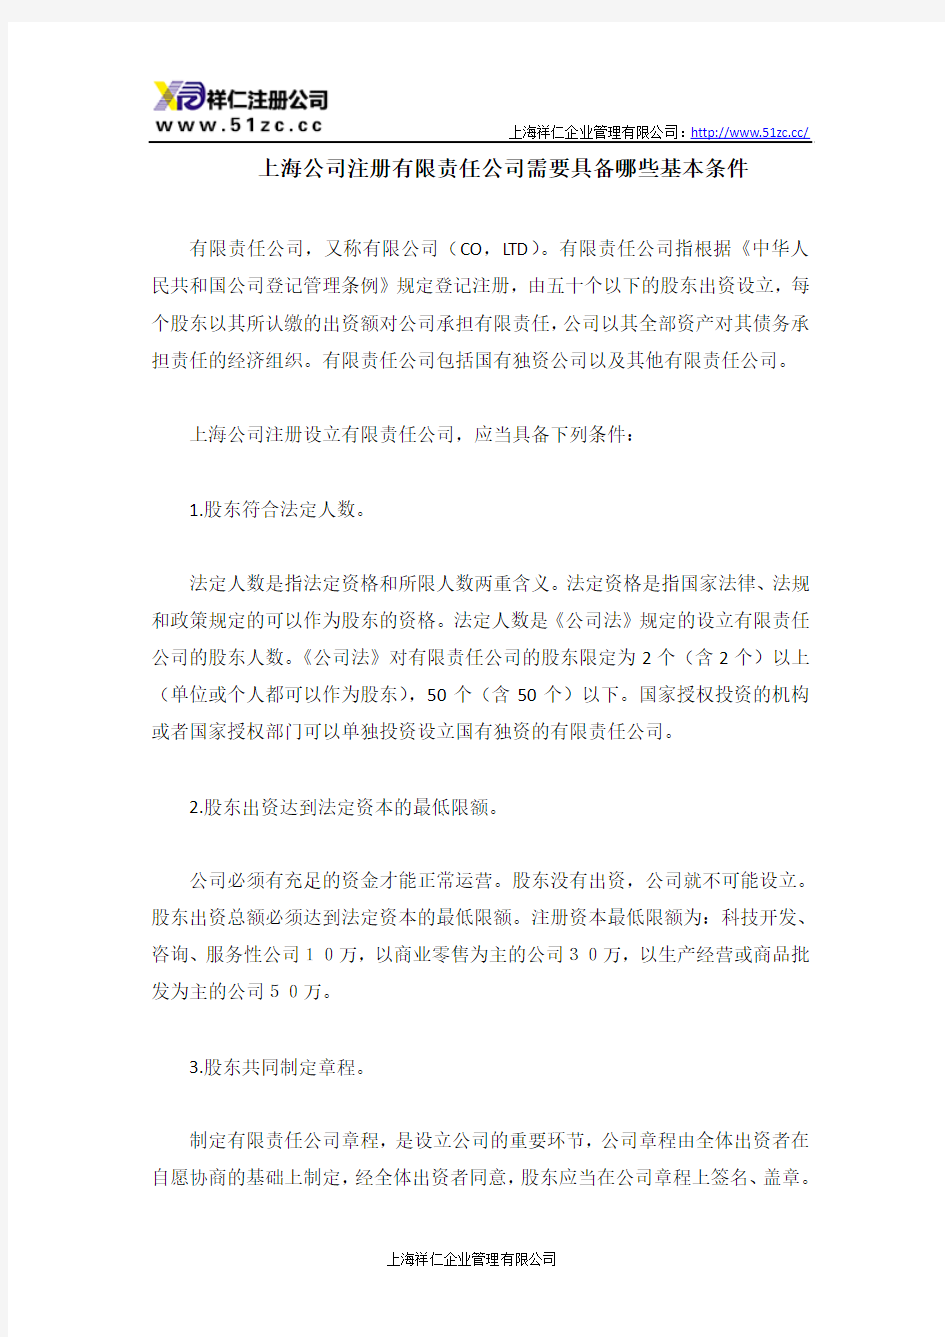 上海公司注册有限责任公司需要具备哪些基本条件